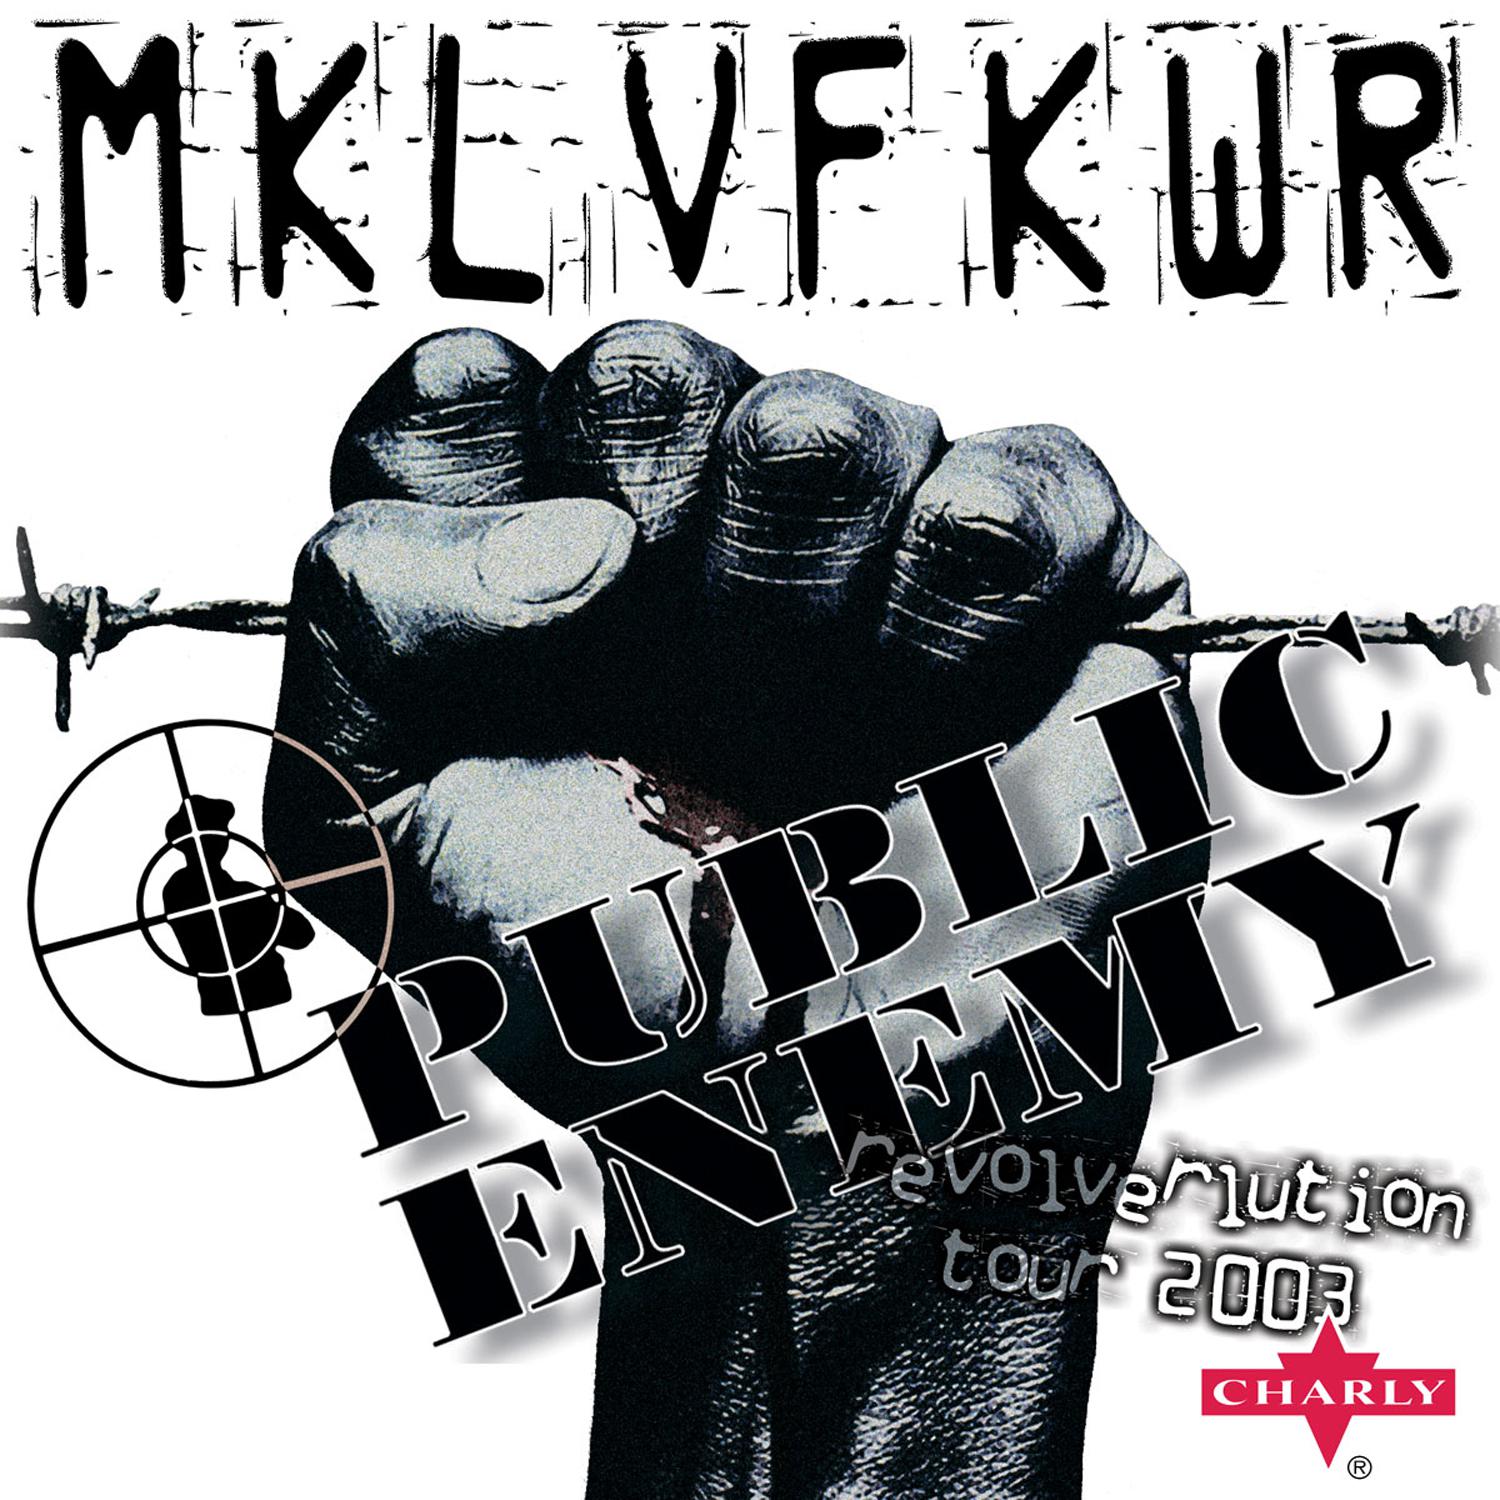 Public Enemy: The Revolverlution Tour (Live)